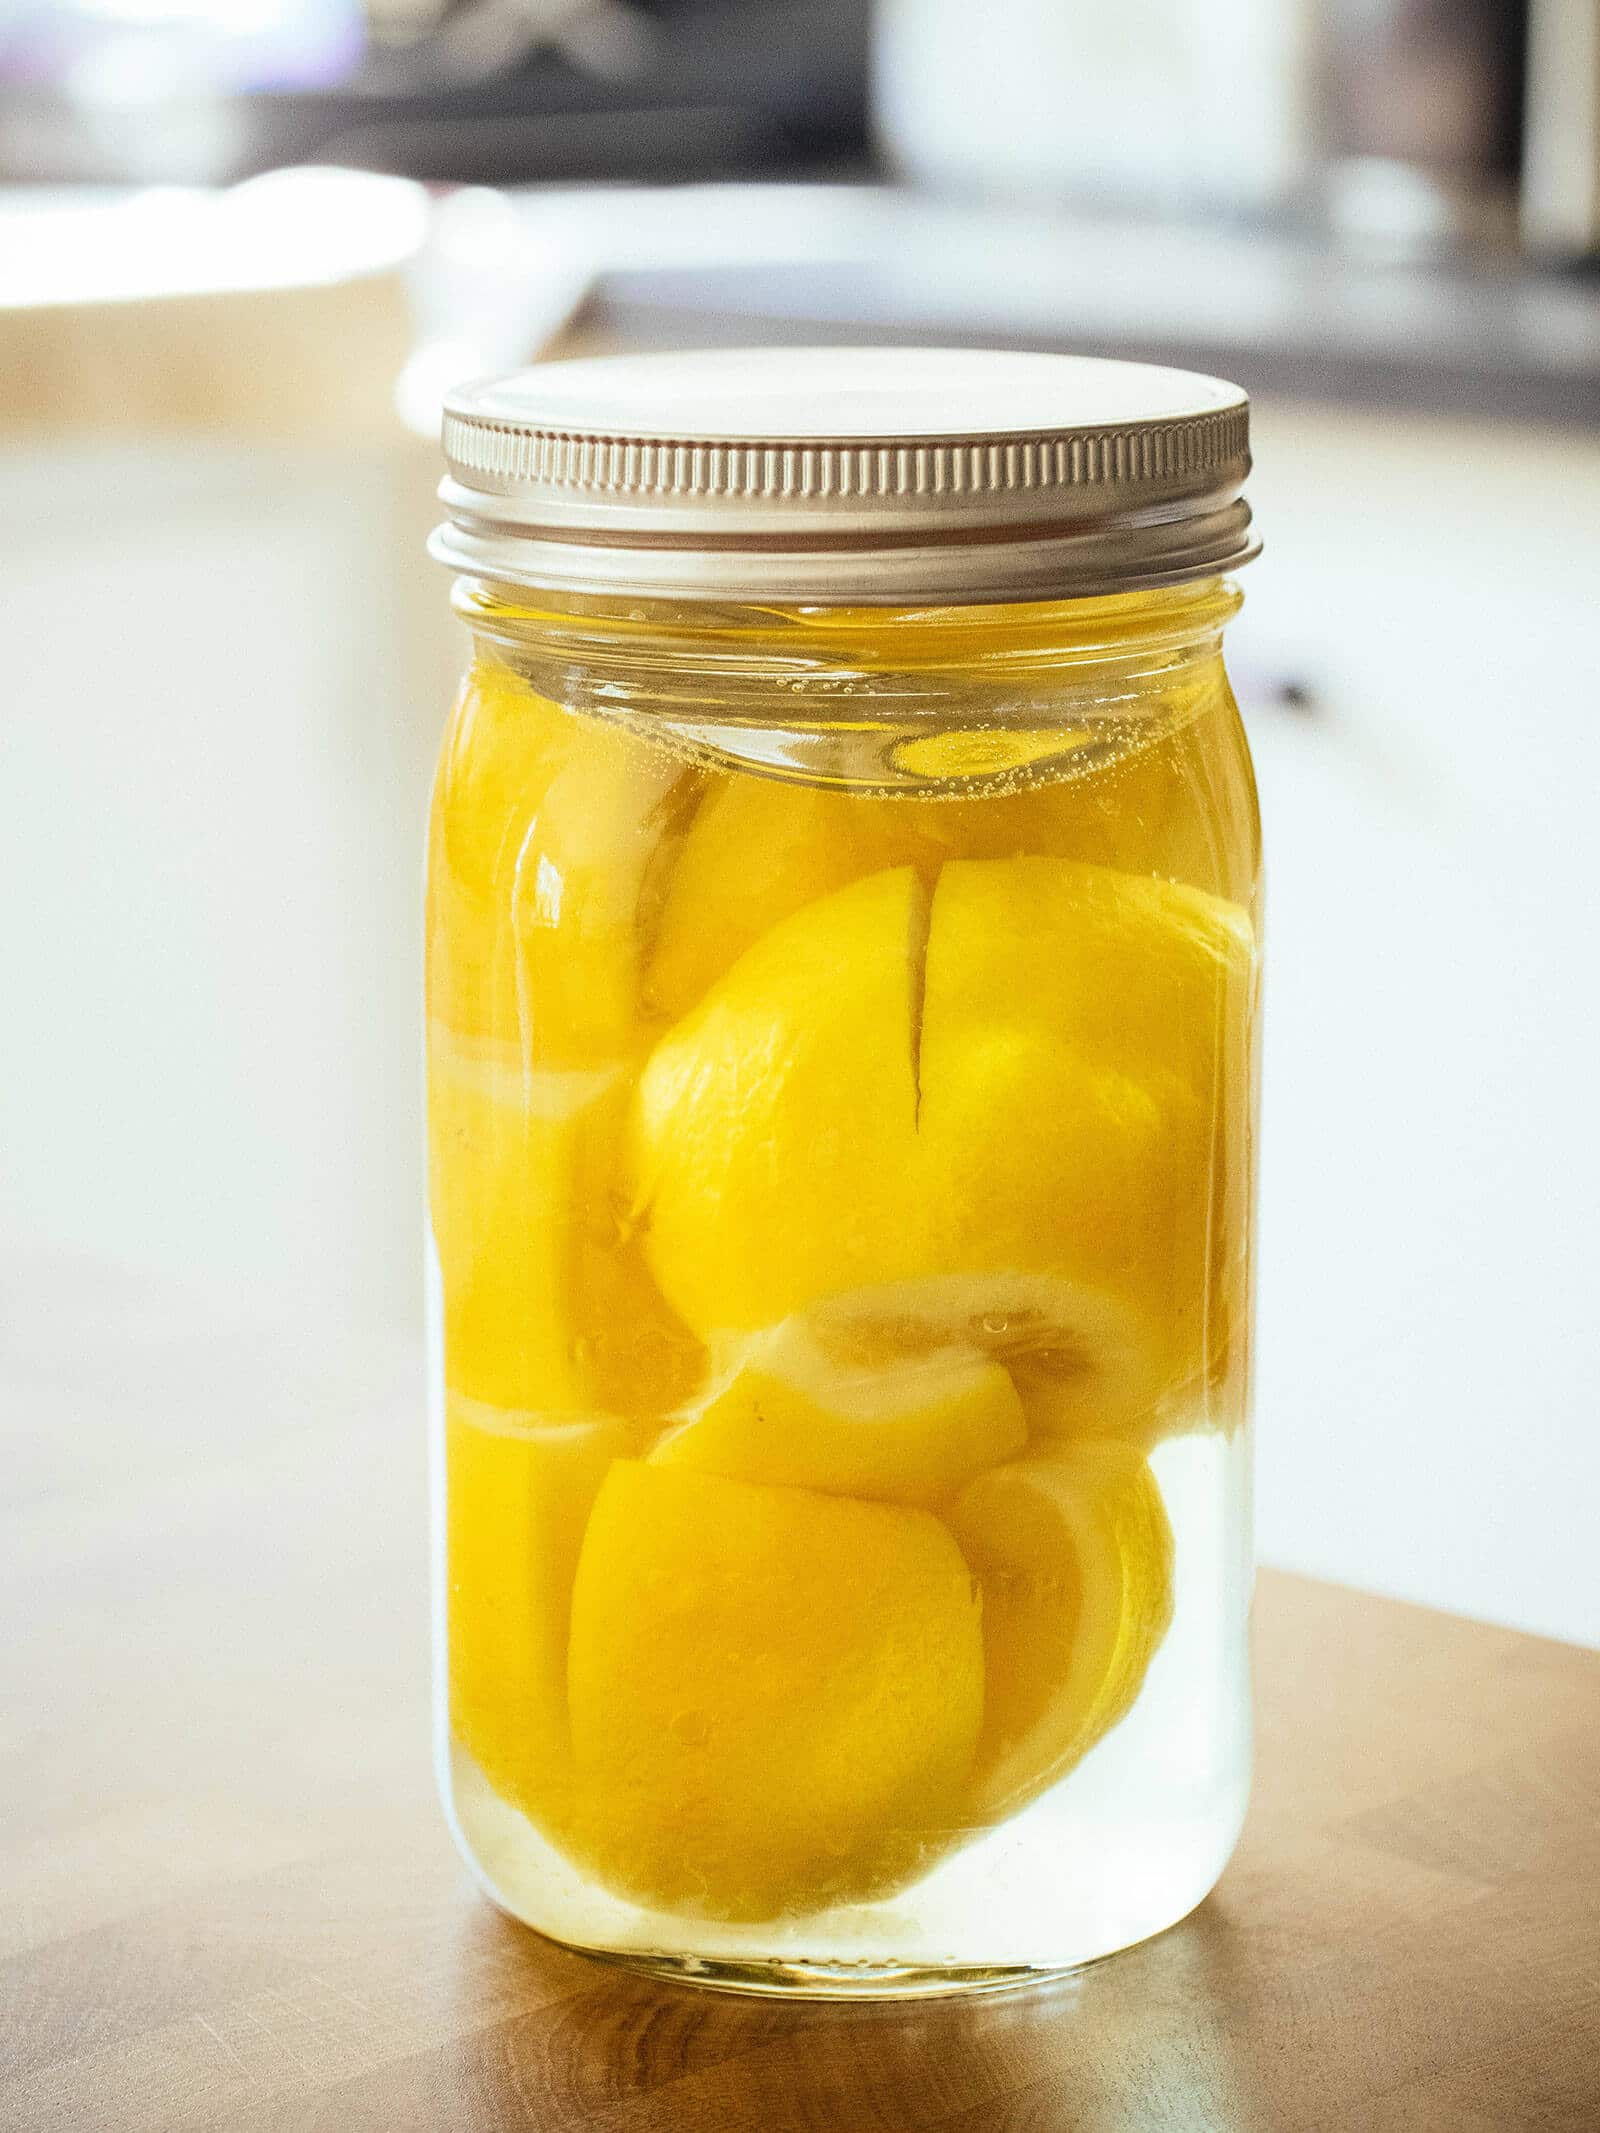 Jar full of lemons being preserved in brine